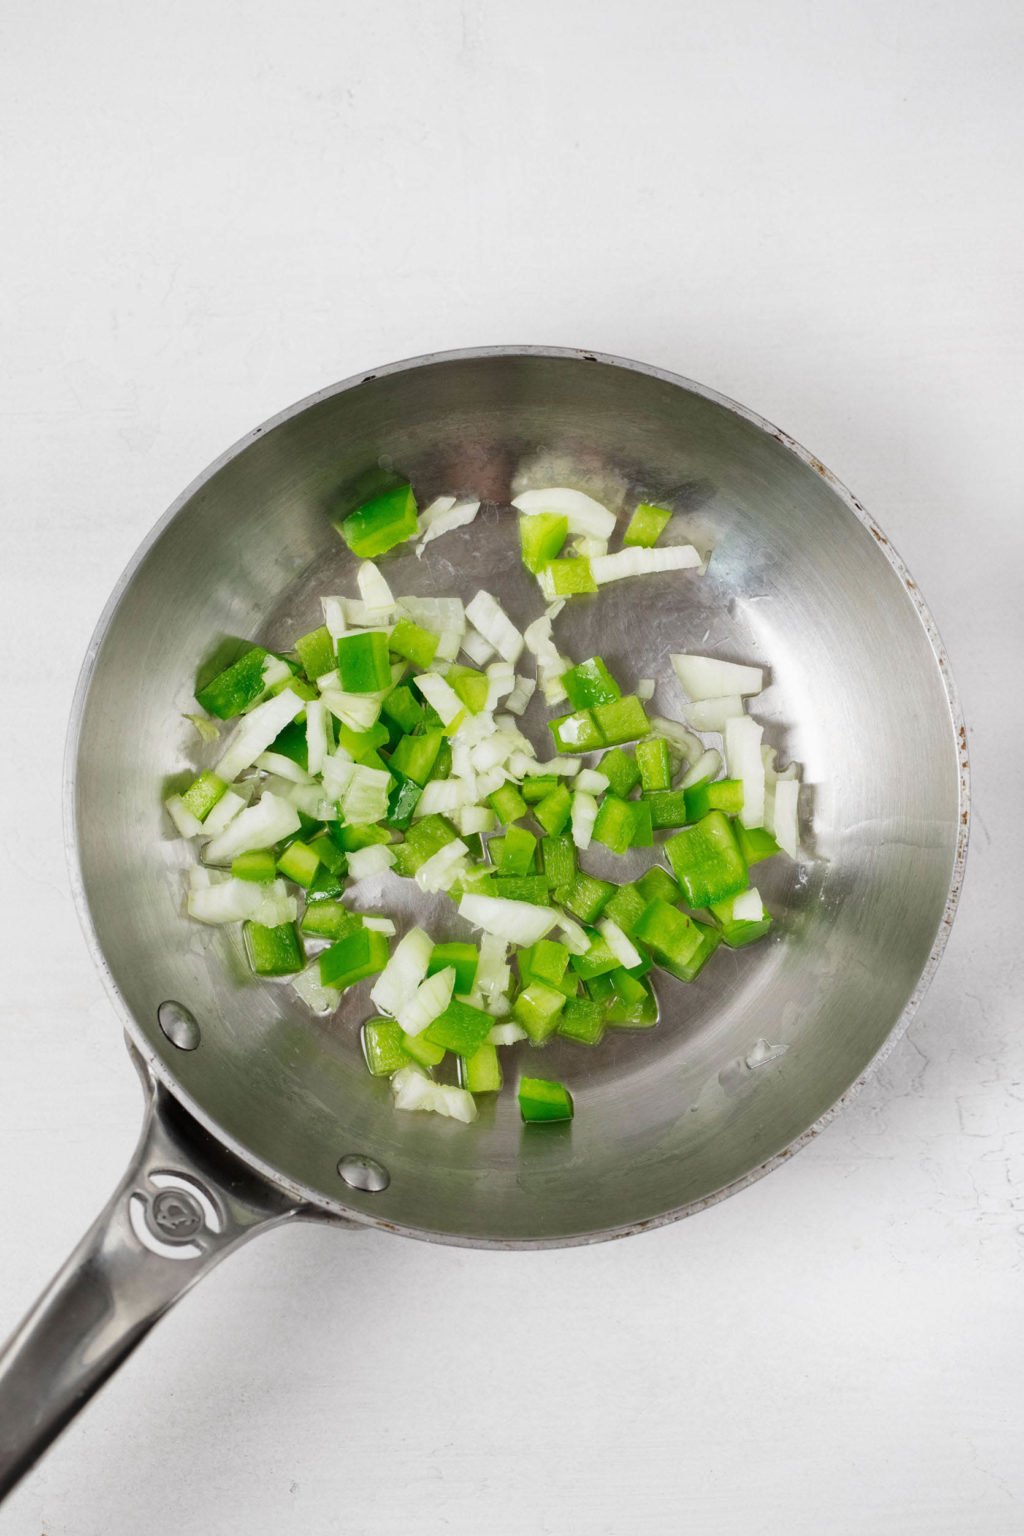 La cebolla picada y el pimiento verde se saltean en una sartén pequeña.  Se apoya sobre una superficie blanca.